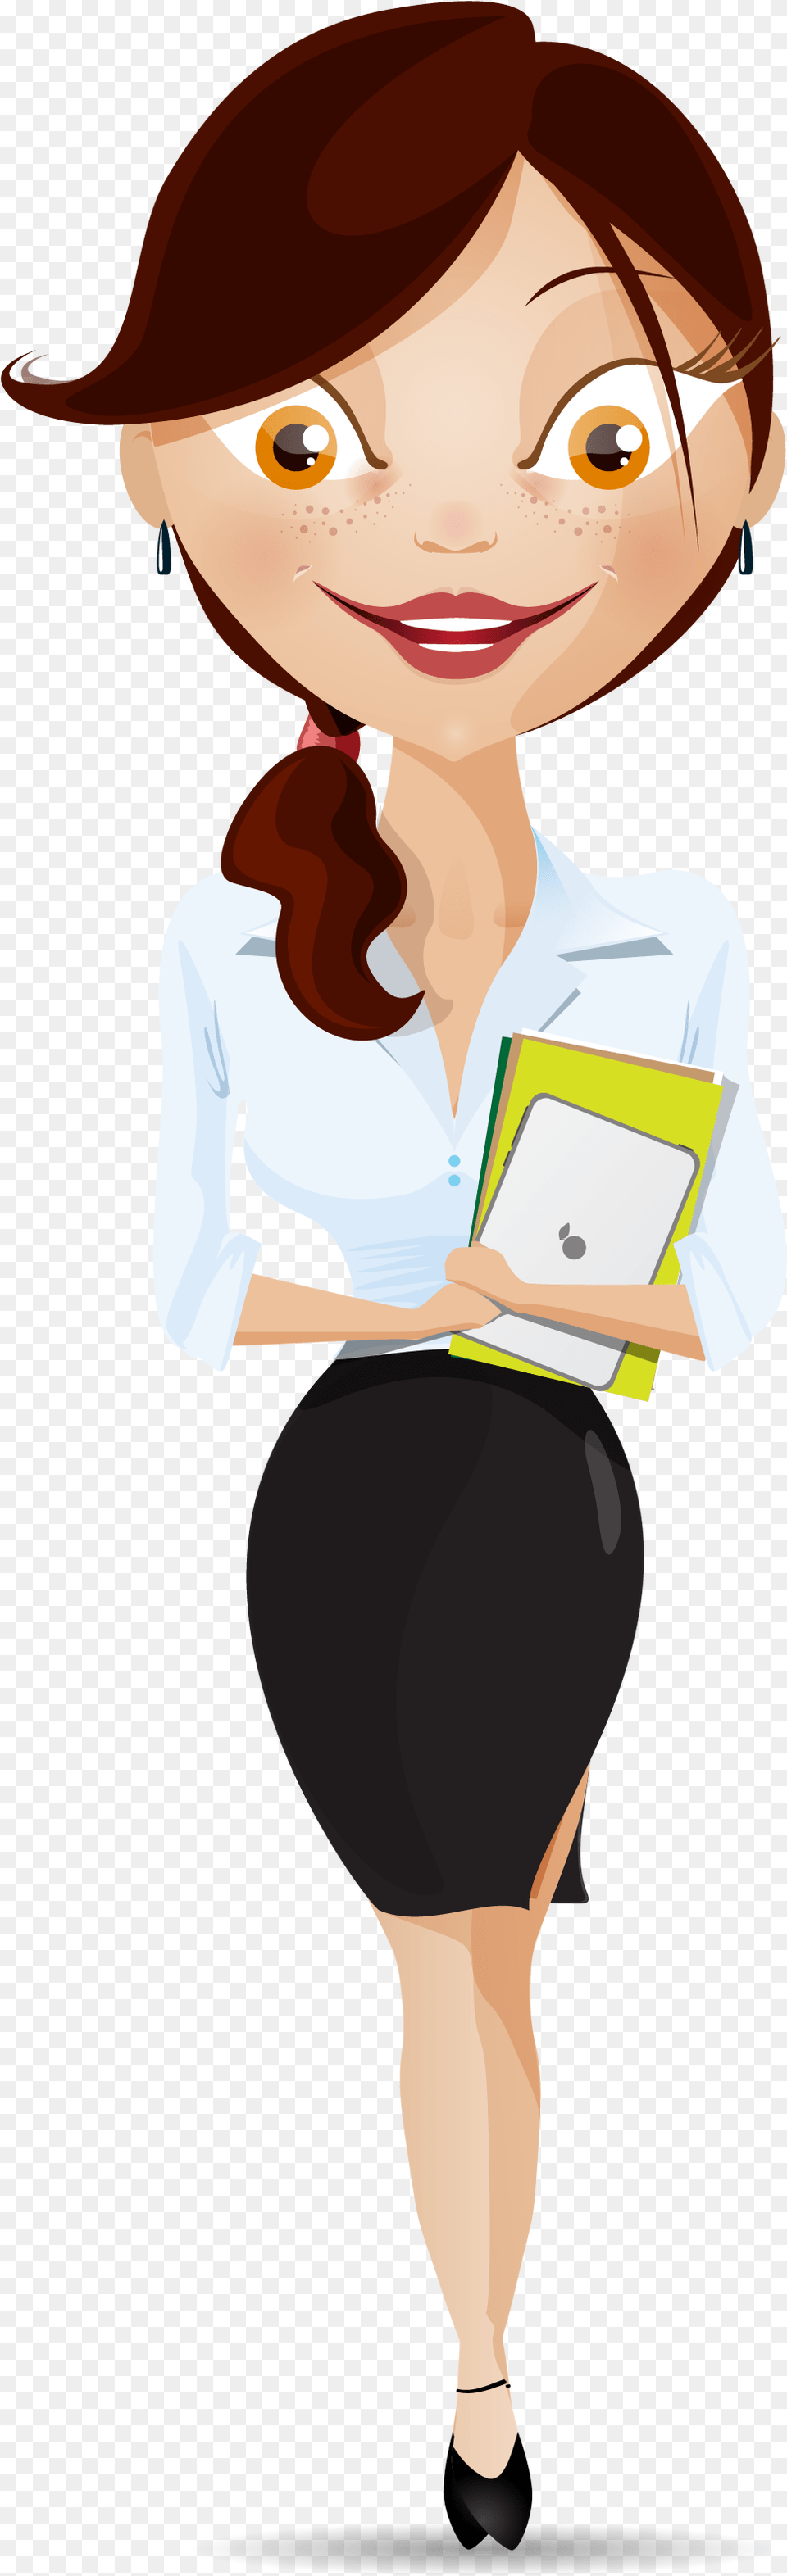 Clipart Woman Teacher Professional Woman Clipart, Book, Comics, Publication, Person Png Image